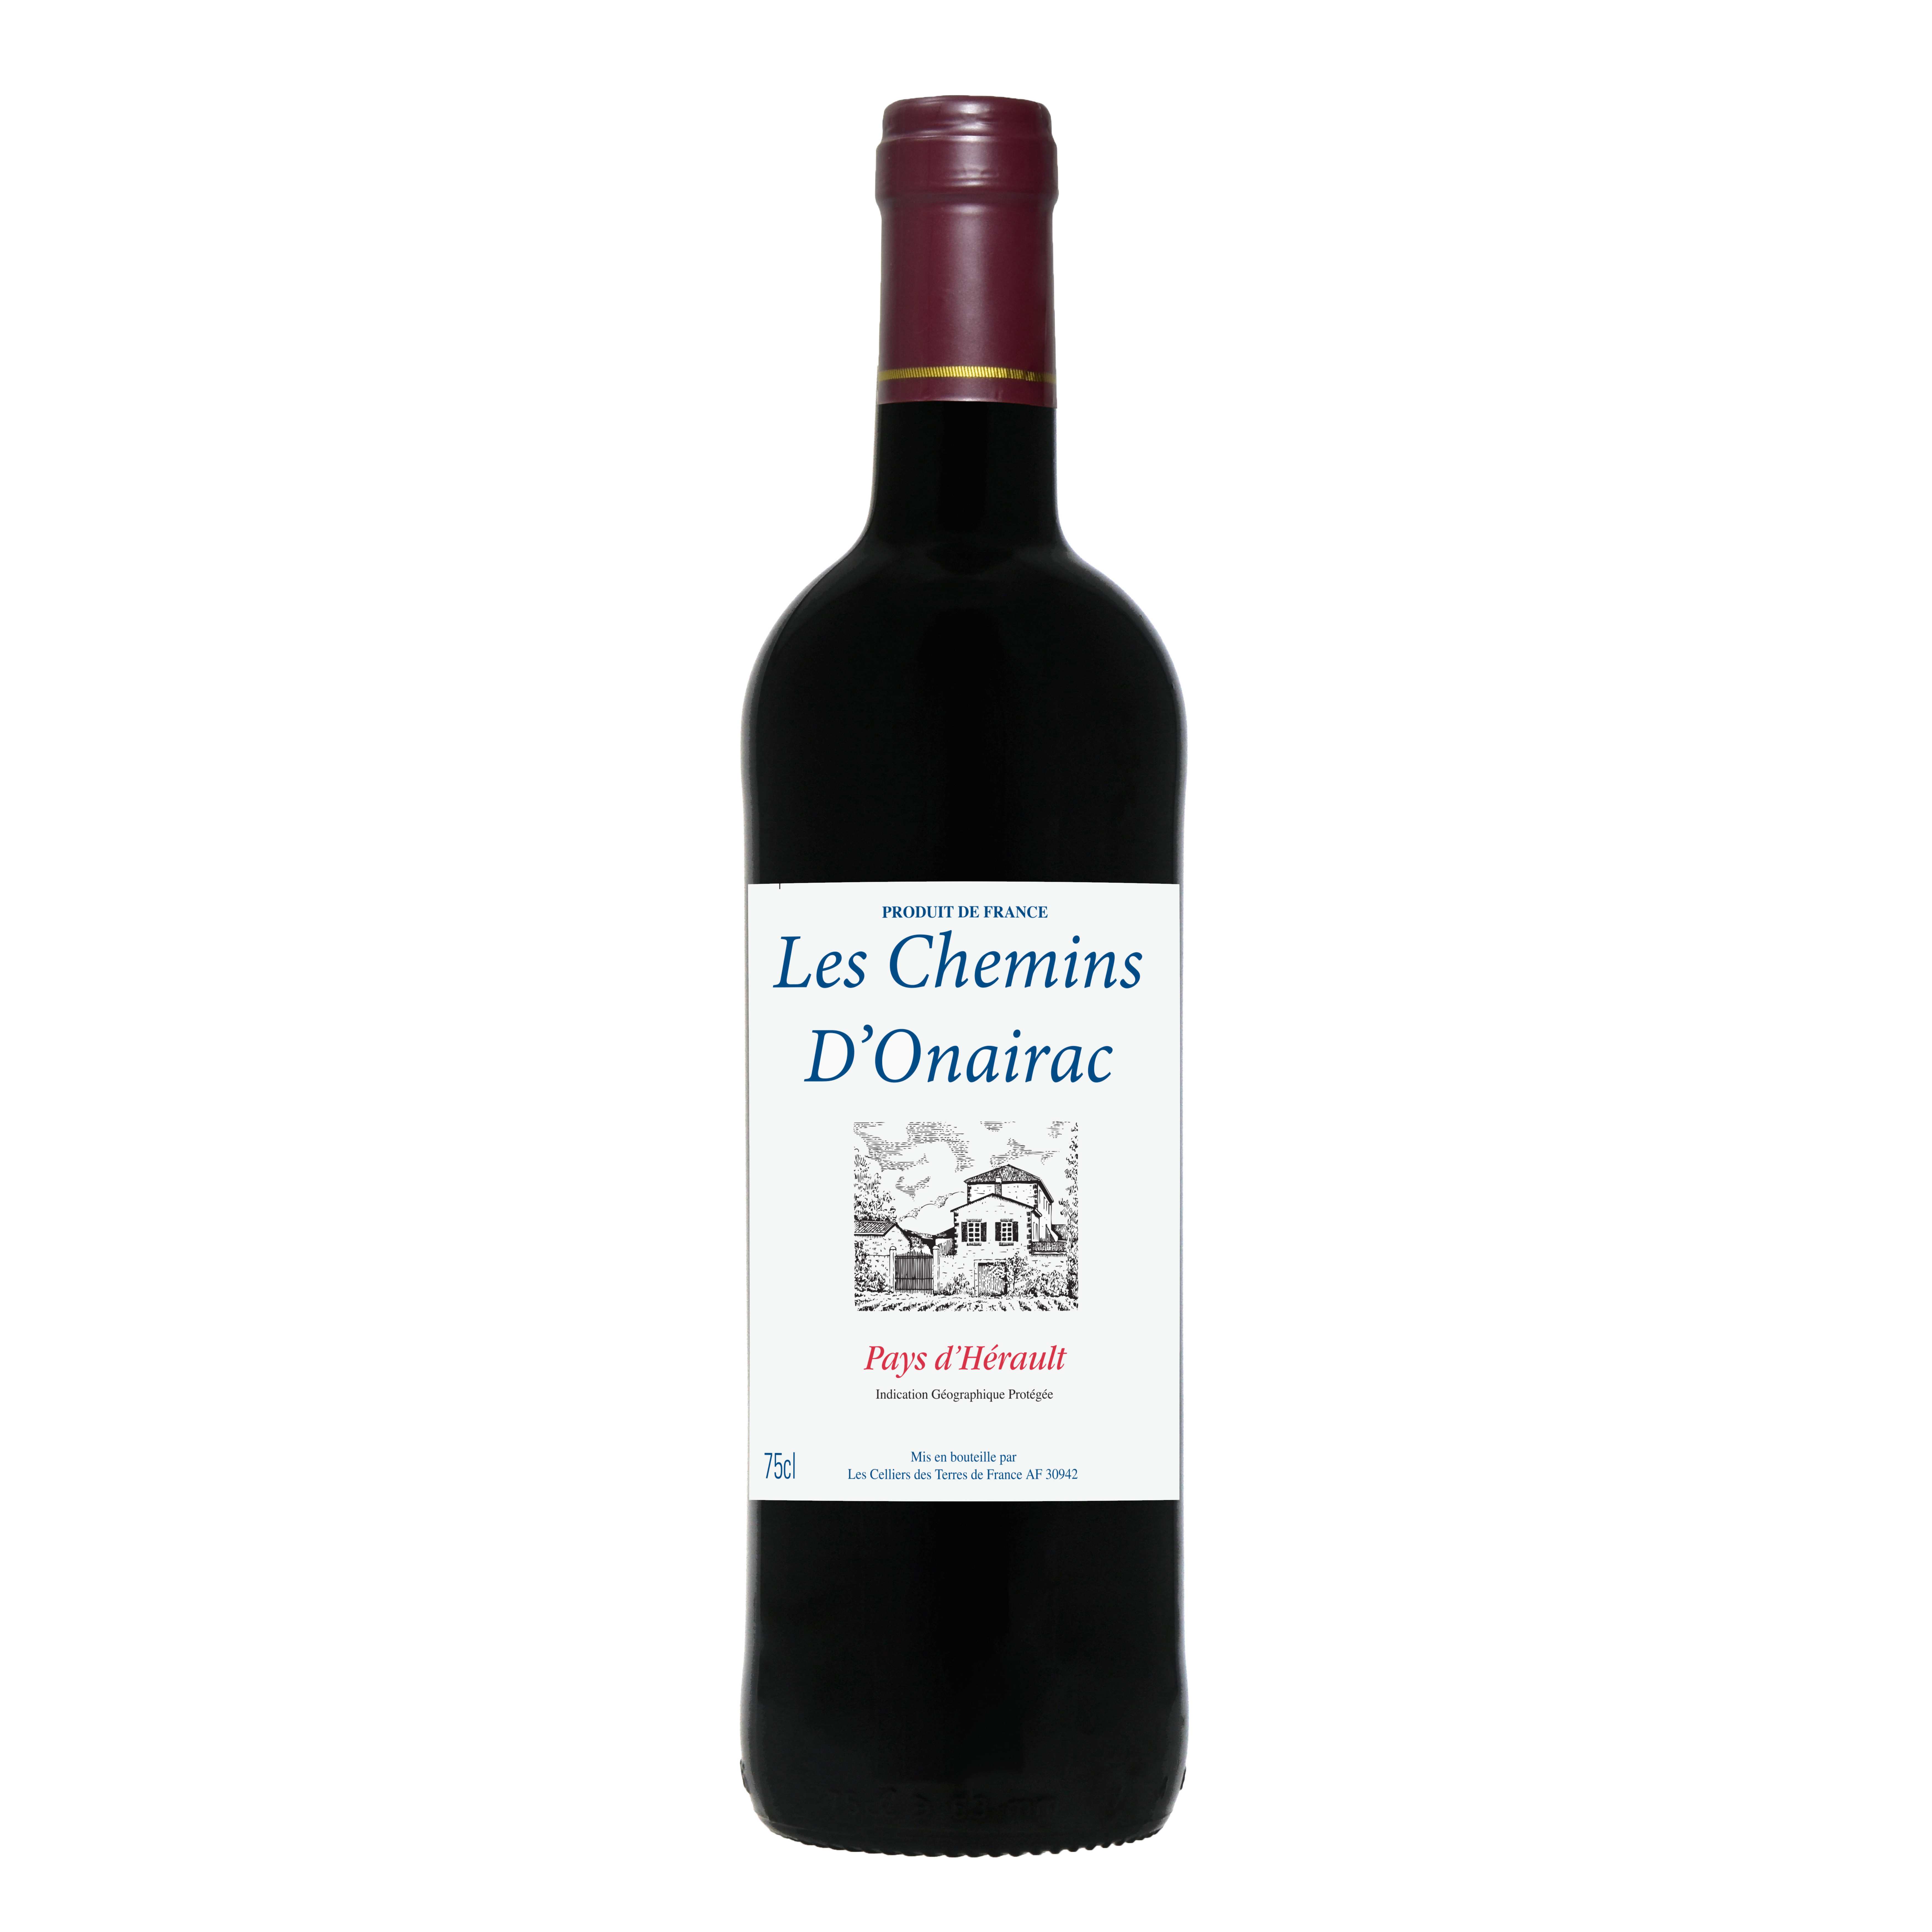 Les Chemins D'onairac - Pays d'hérault vin rouge (750 ml)